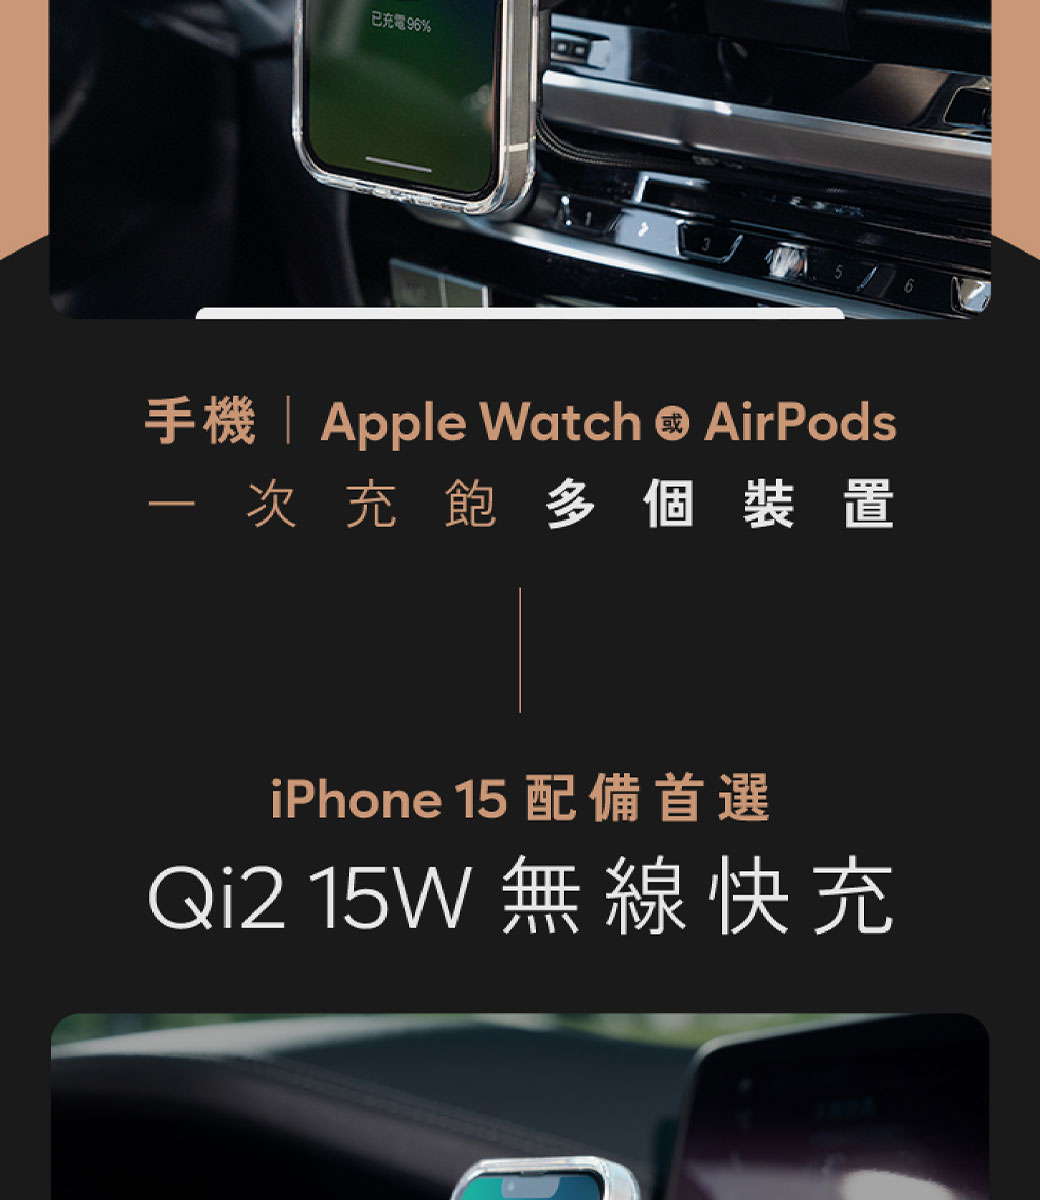 已充電96%手機 Apple Watch  AirPods次充飽多個裝置iPhone 15 配備首選Qi2 15W 無線快充